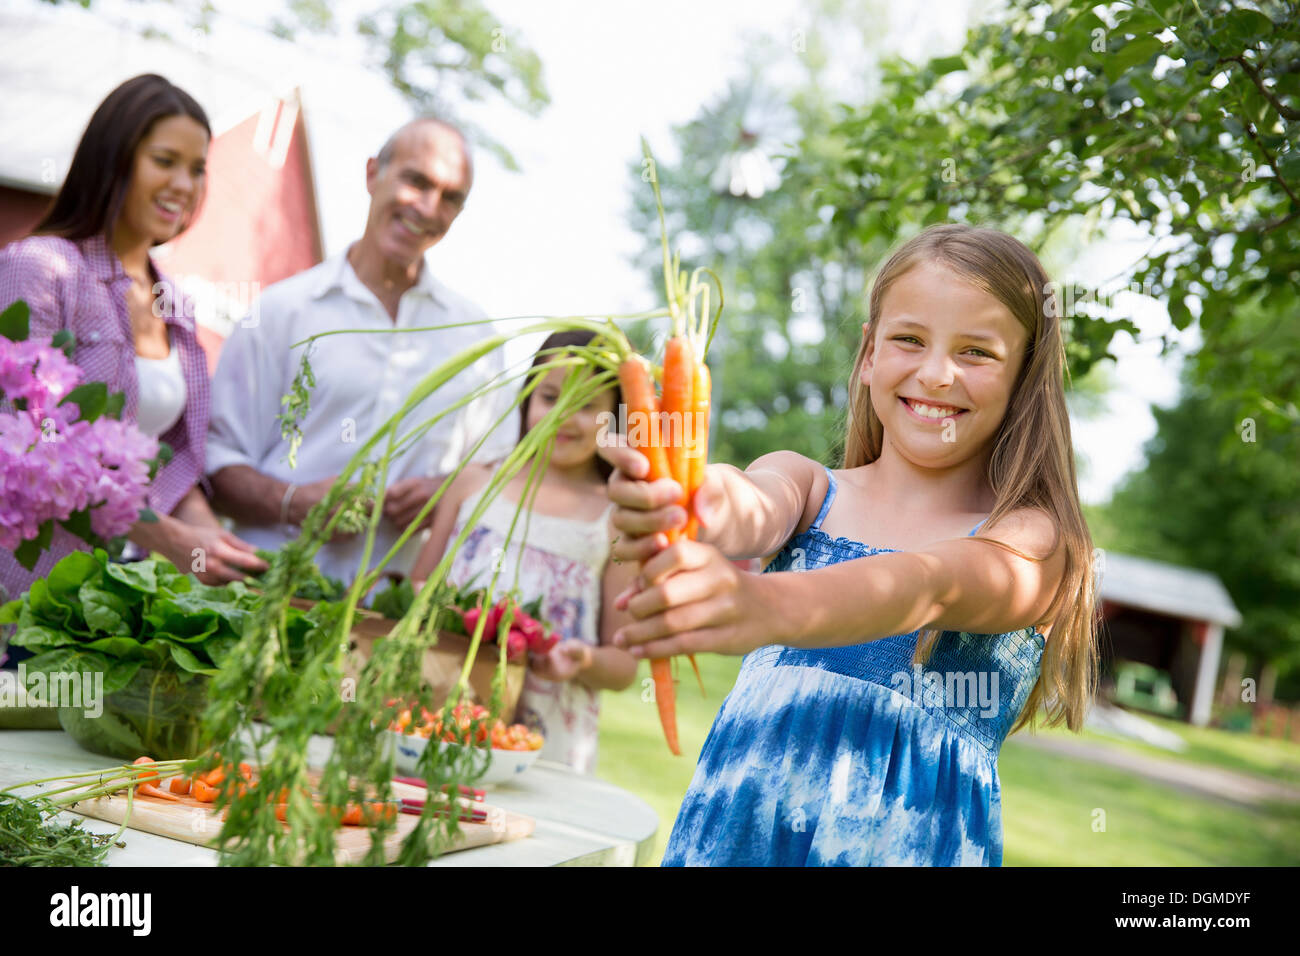 Partie de la famille. Une table dressée avec des salades et des fruits et légumes frais enfant holding out a les carottes. Banque D'Images